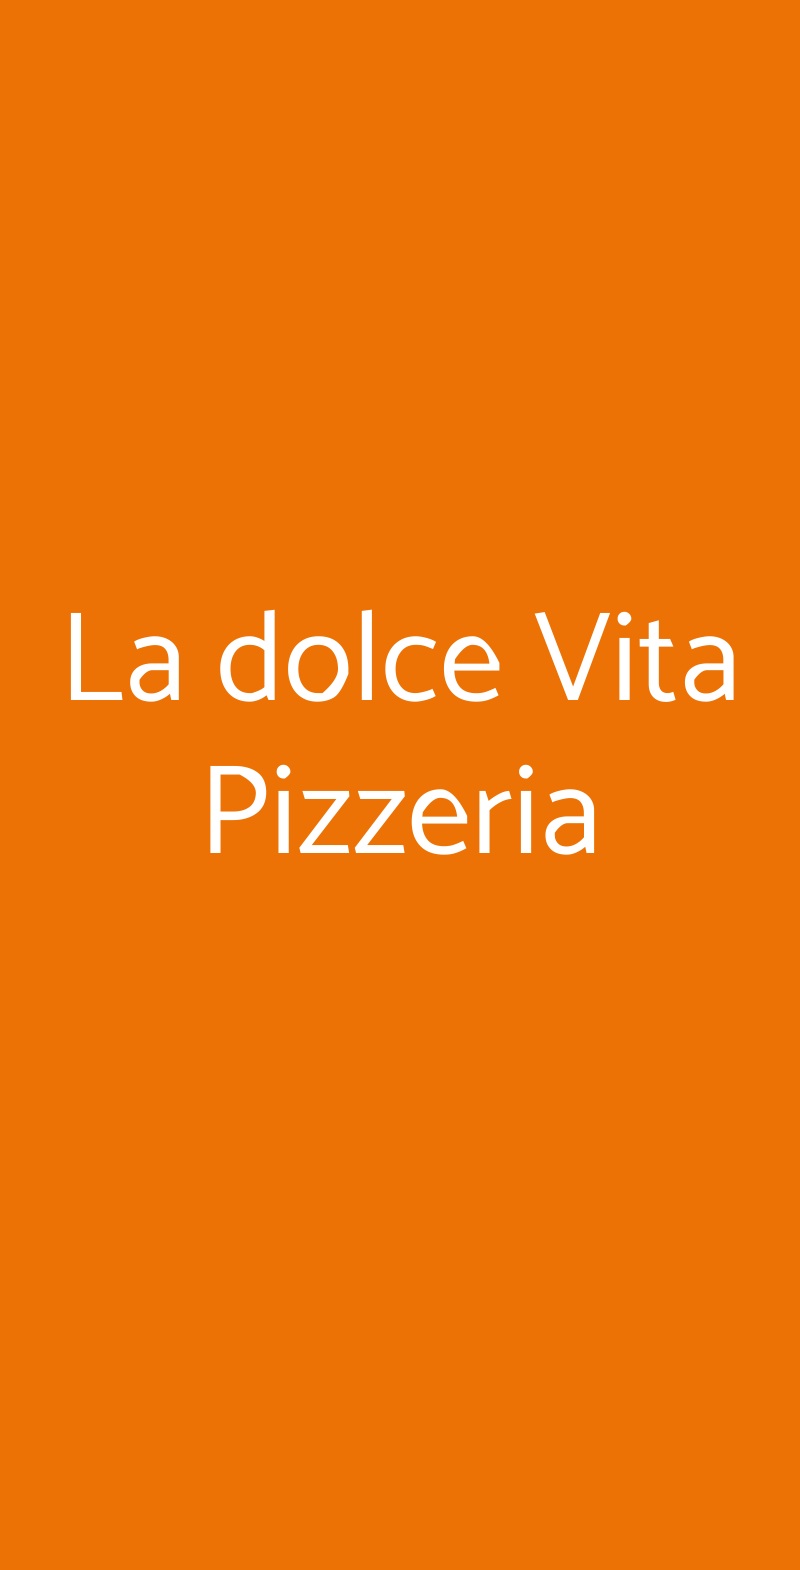 La dolce Vita Pizzeria Catania menù 1 pagina